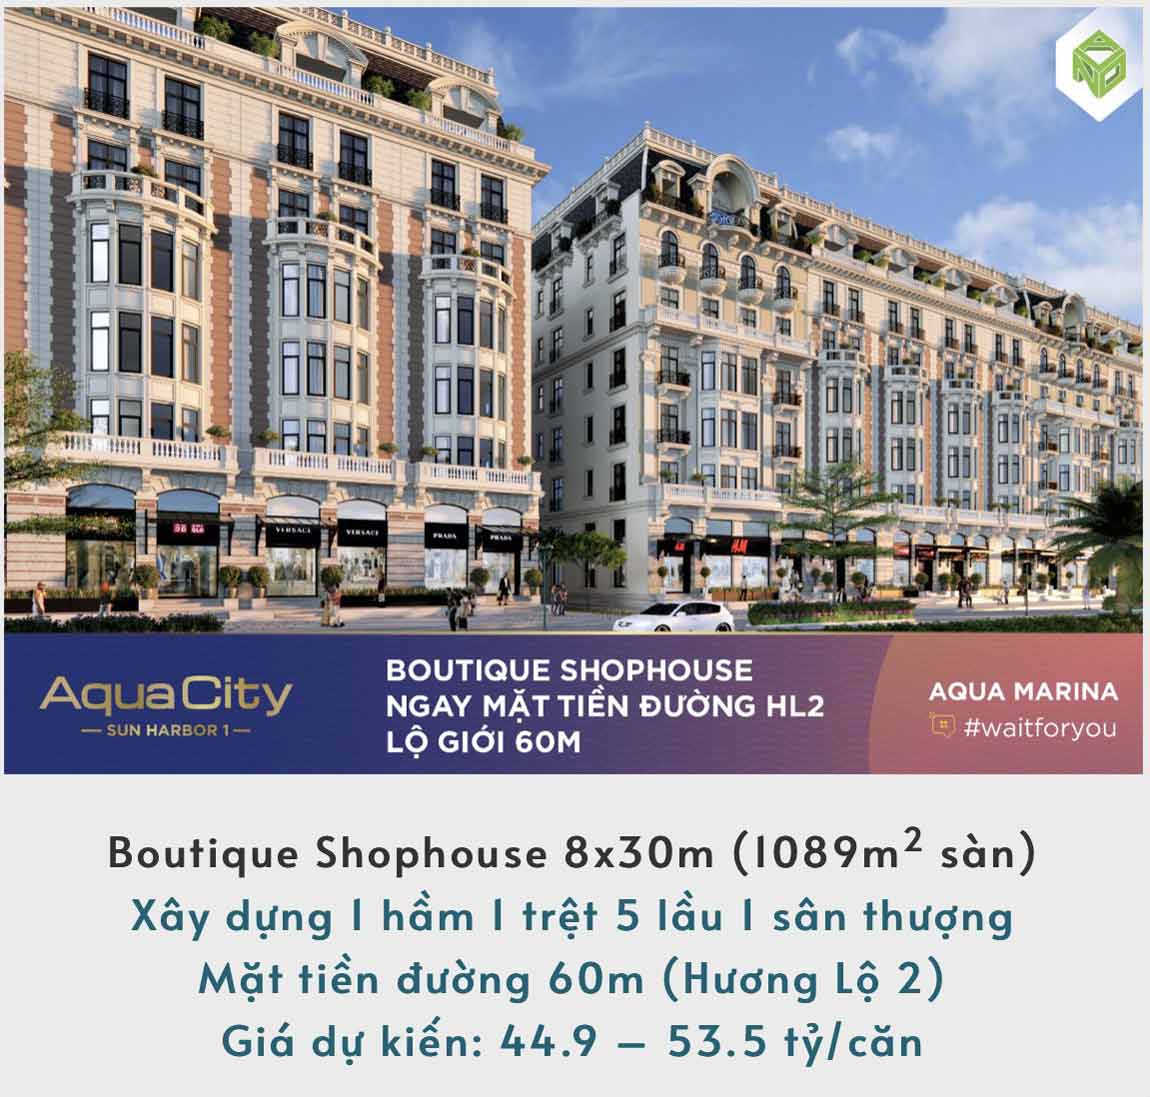 Giá bán Boutique Shophouse 8x30m và thiết kế chi tiết